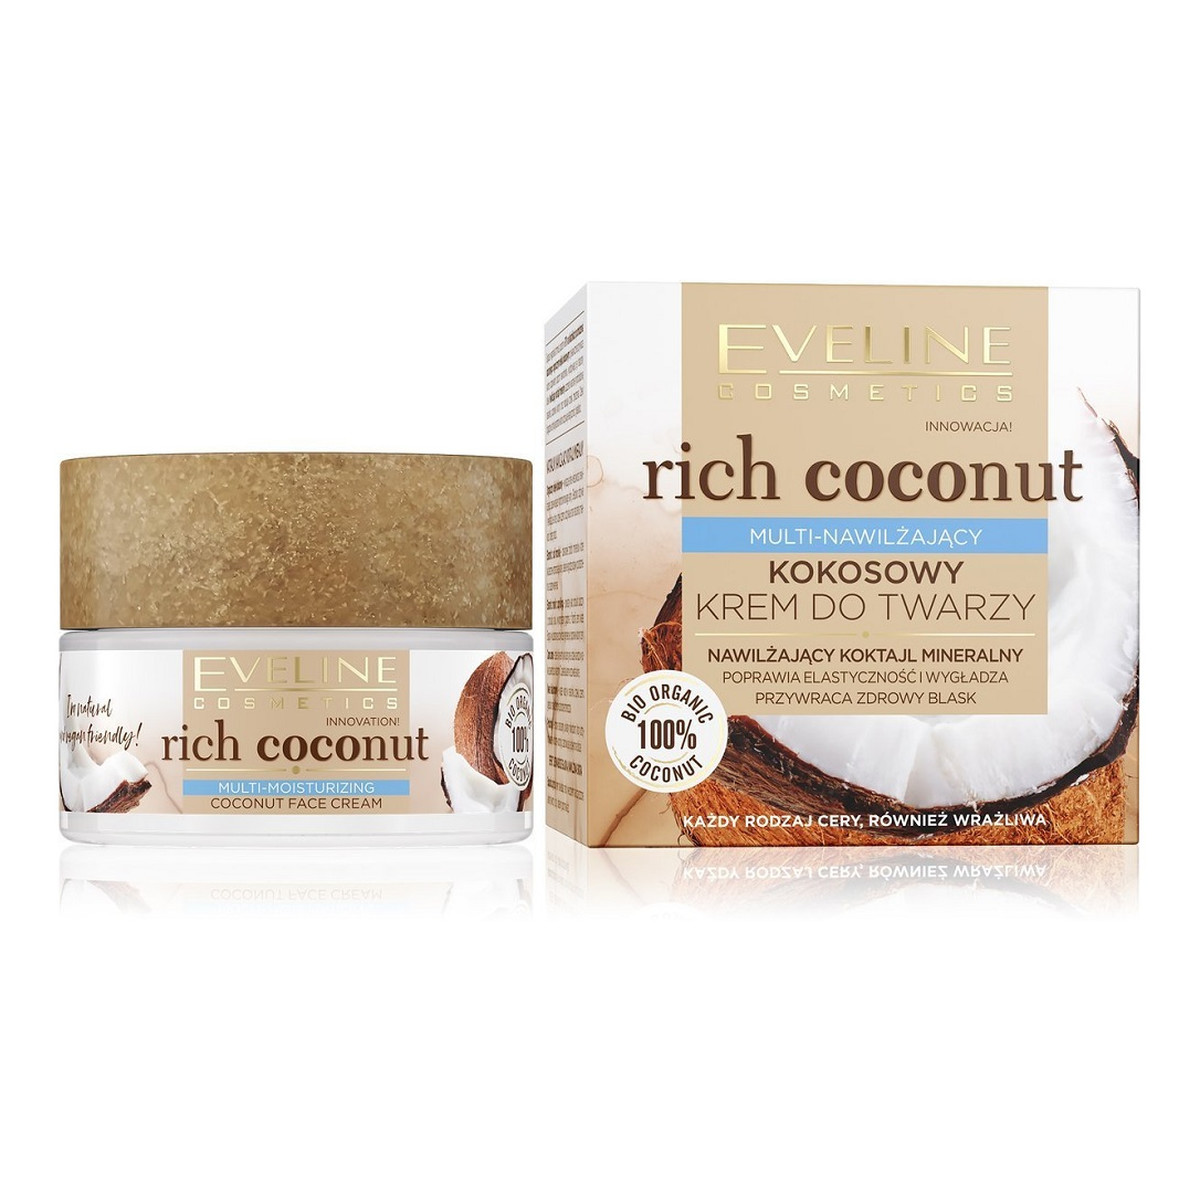 Eveline Rich Coconut Kokosowy Krem Do Twarzy Multi-Nawilżający 50ml